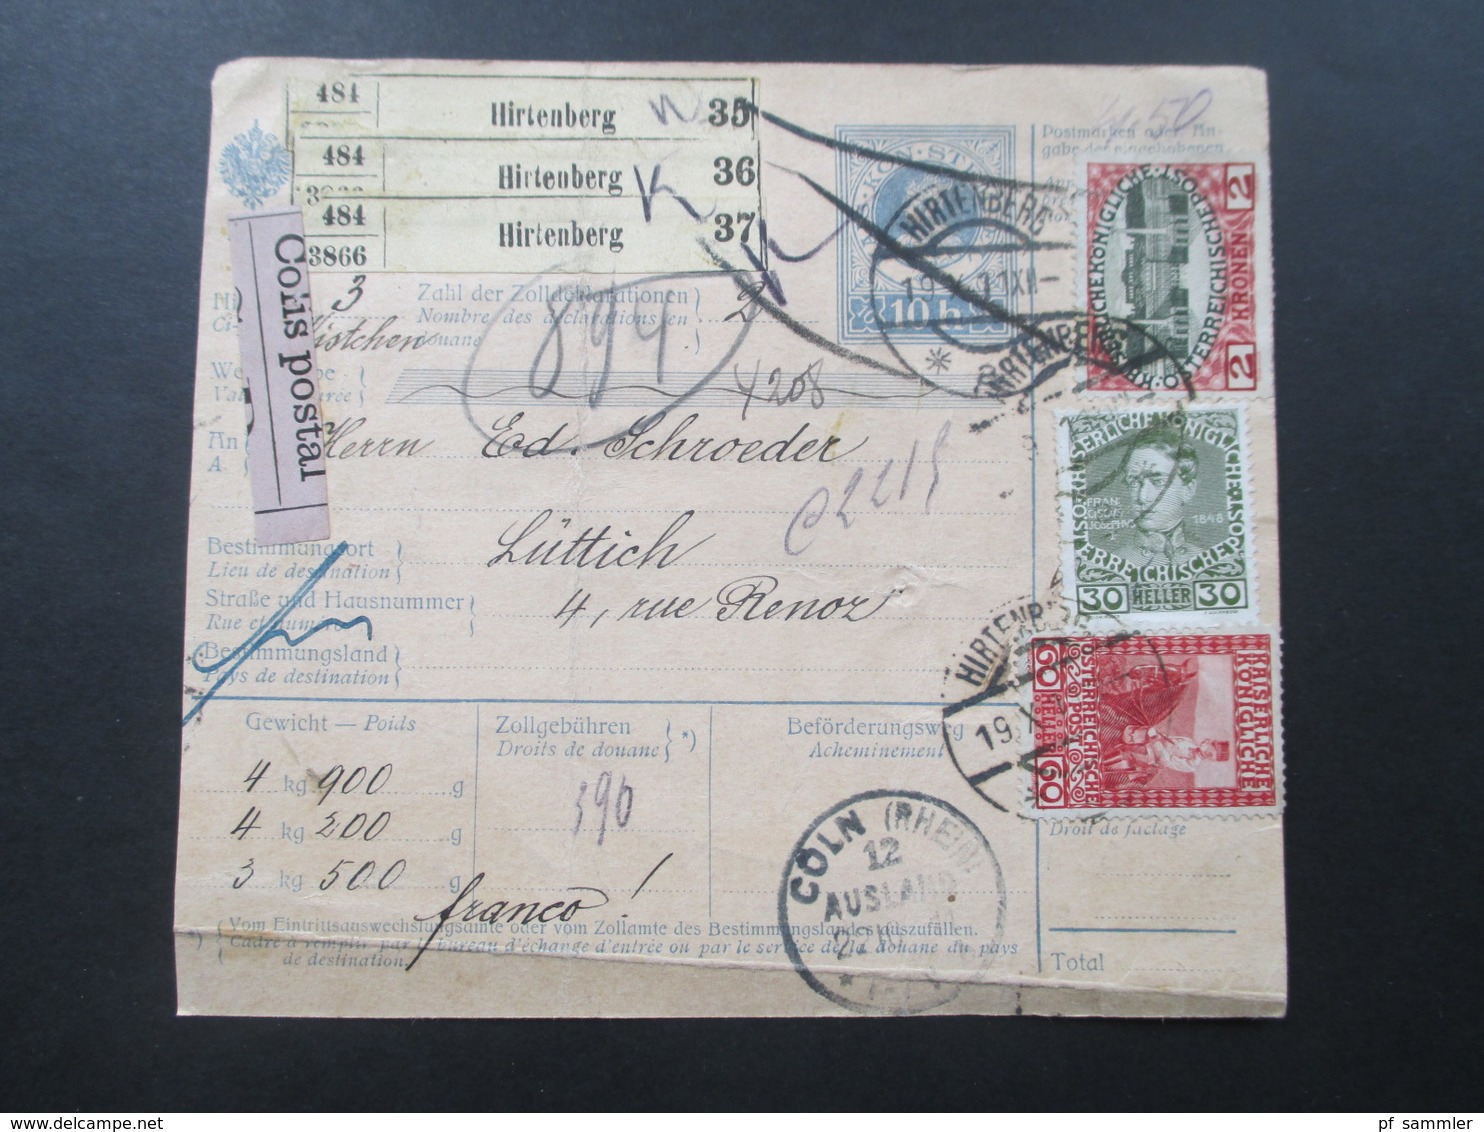 Österreich 1911 Nr. 154 MiF Paketkarte Mit Klebzettel 484 Hirtenberg Nach Lüttich über Köln U. Liege! Viele Stempel!! - Briefe U. Dokumente